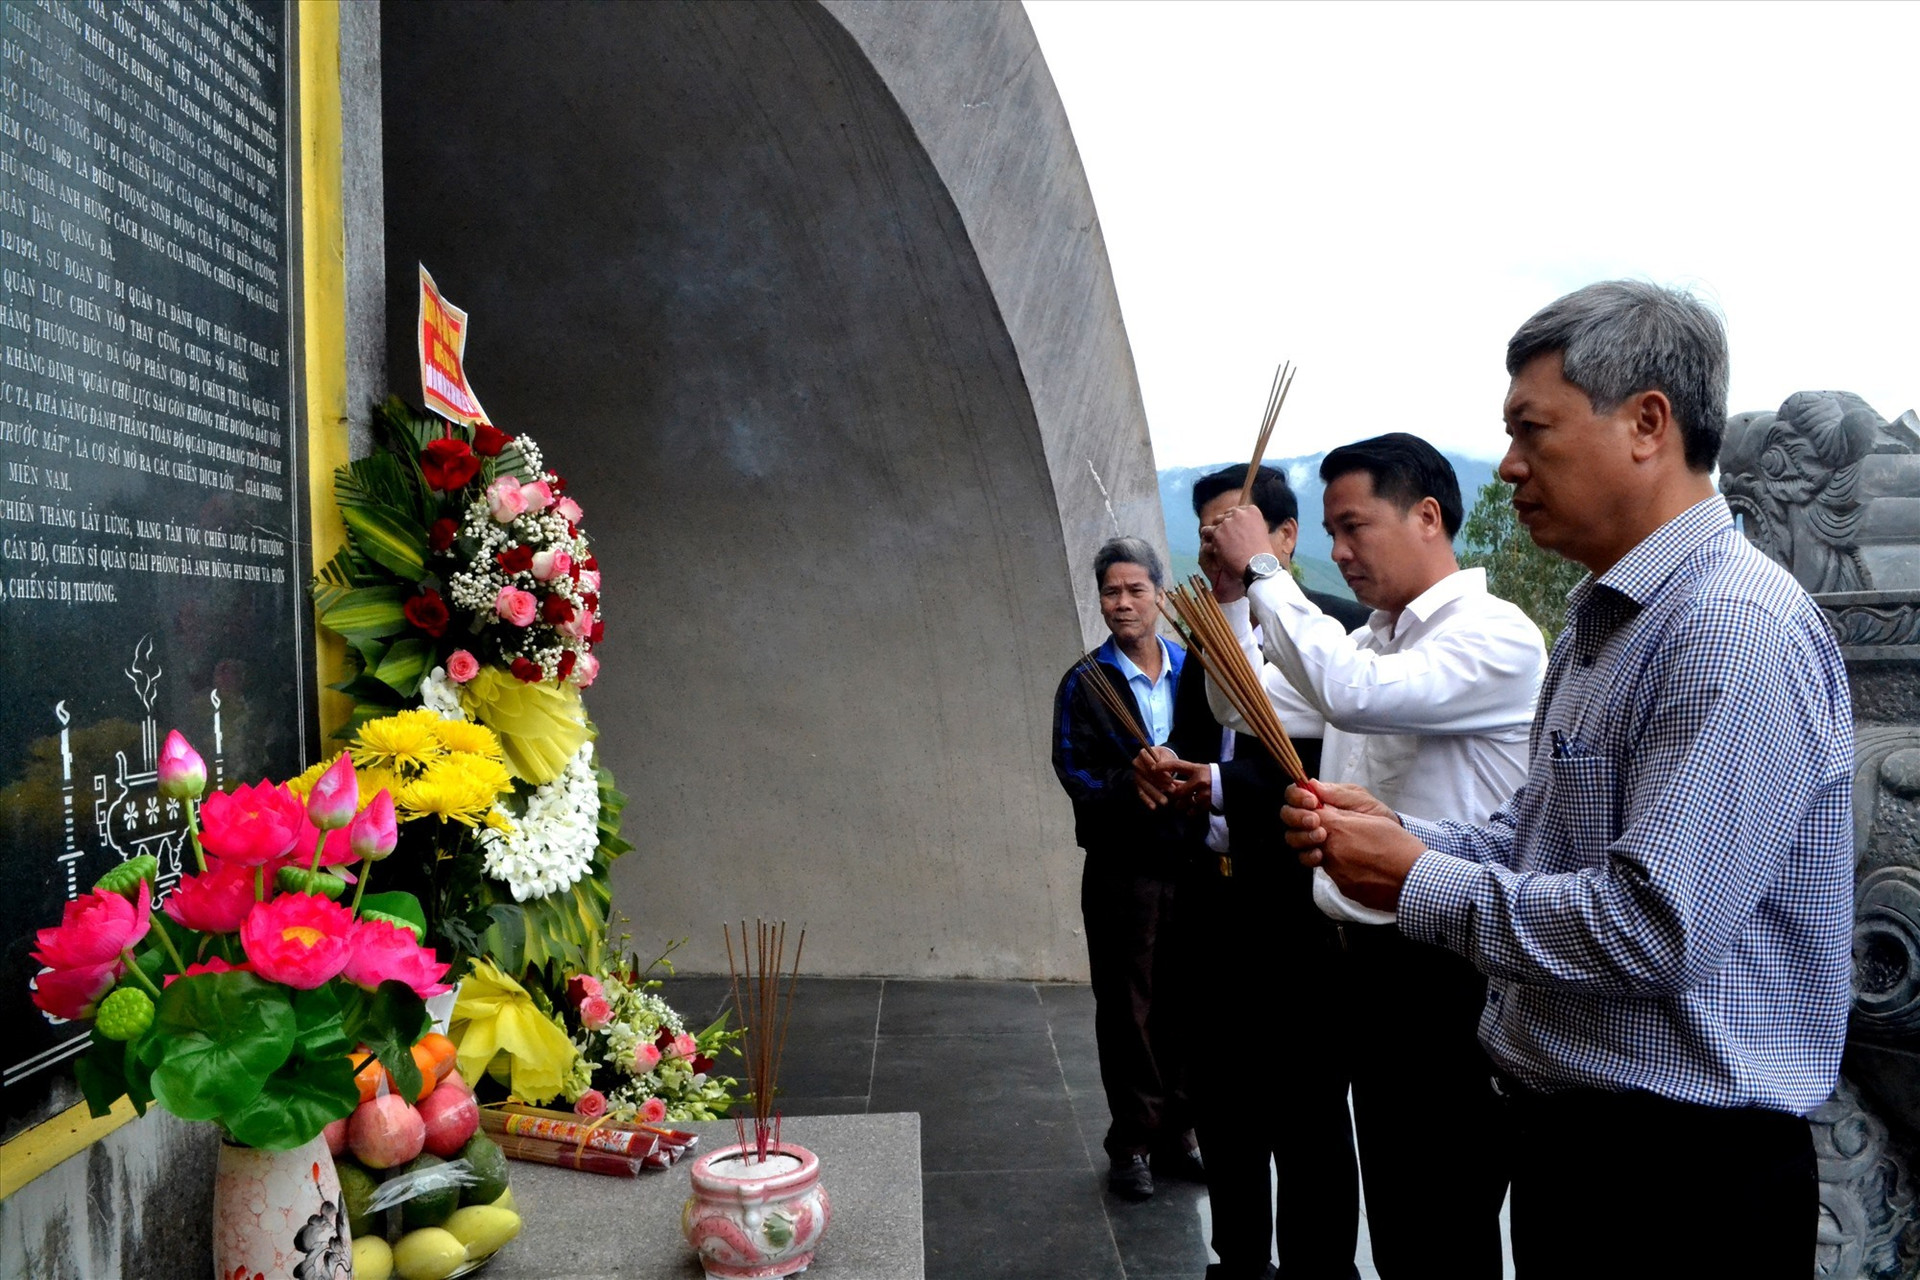 Phó Chủ tịch UBND tỉnh Hồ Quang Bửu cùng lãnh đạo huyện Đại Lộc viếng hương tại Tượng đài chiến thắng Thượng Đức. Ảnh: Q.VIỆT